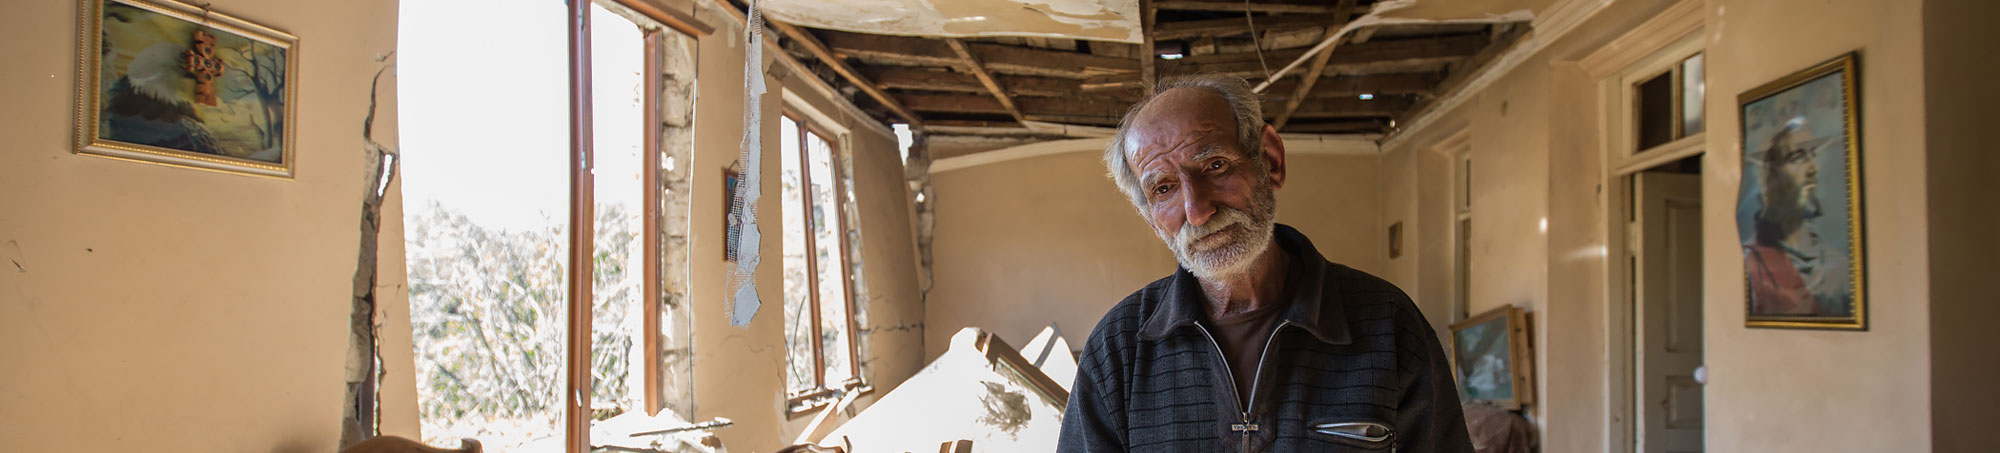 Old man desolated his home destroyed Nagorno-Karabakh. Artsakh (Nagorno Karabakh)